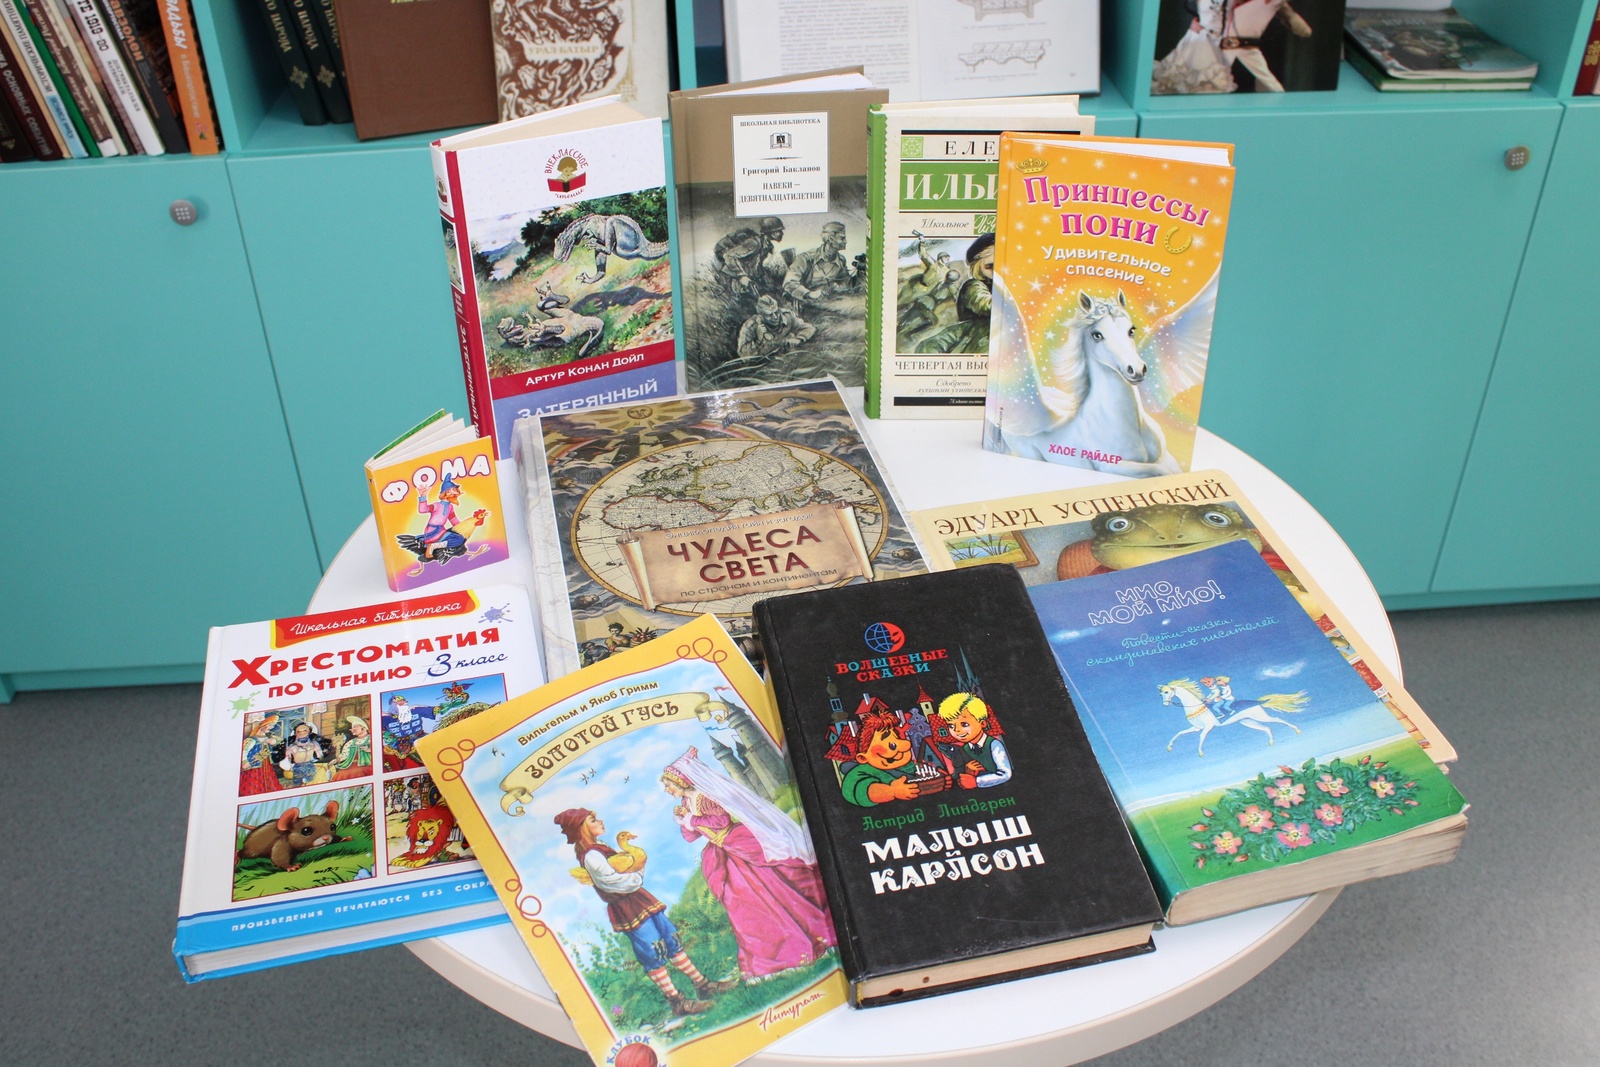 Модельная библиотека собрала книги Донбассу